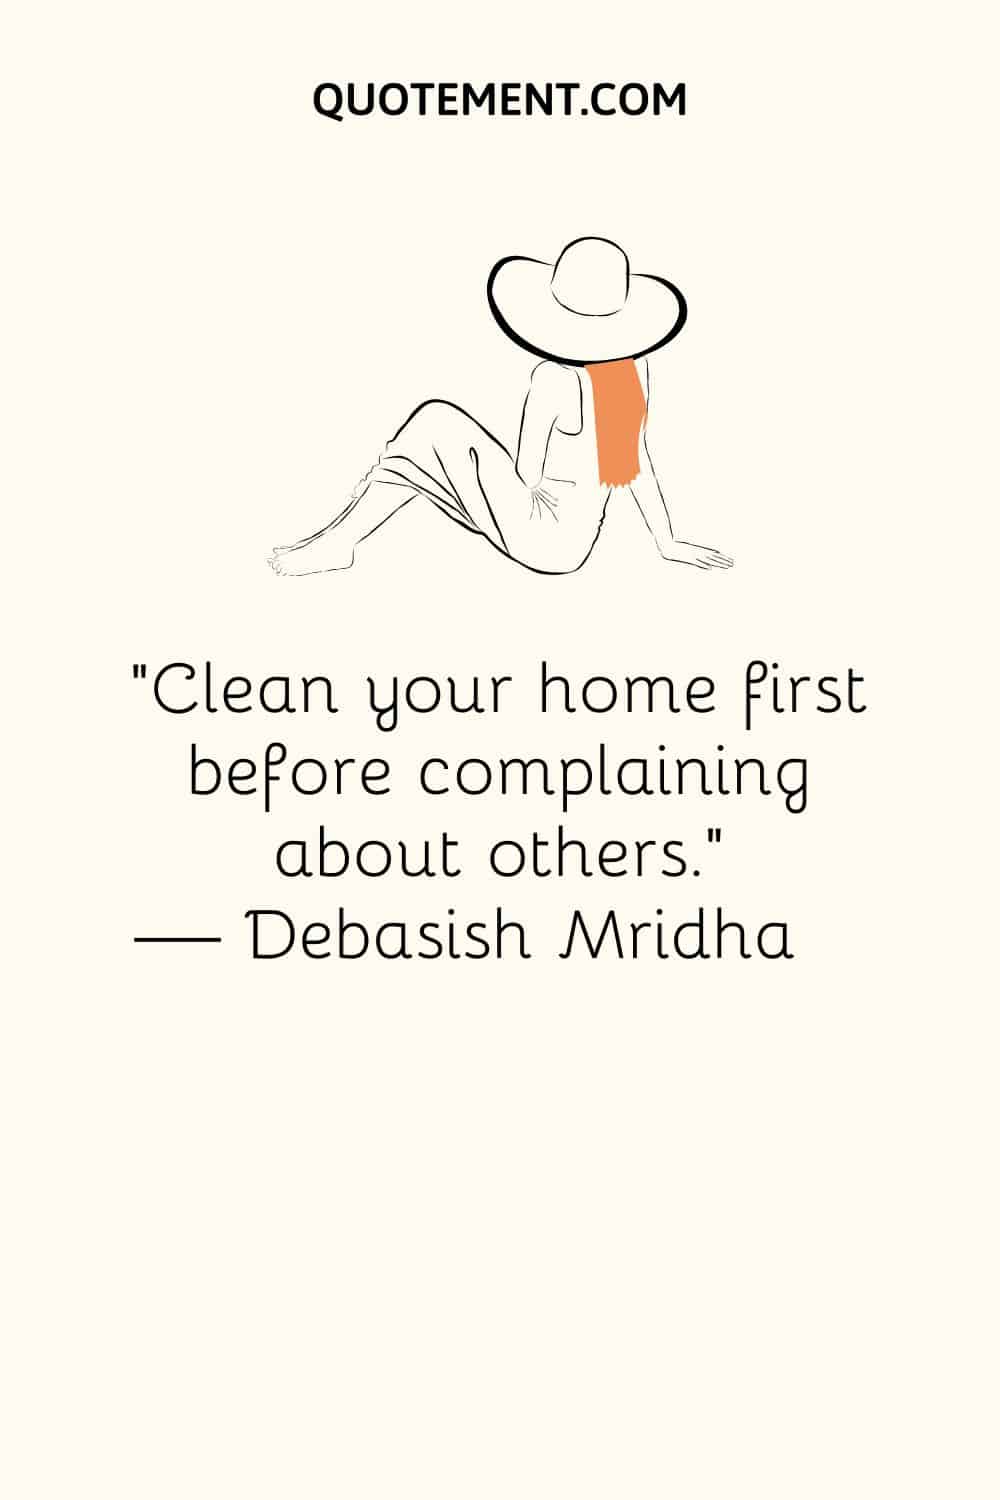 Limpia primero tu casa antes de quejarte de los demás